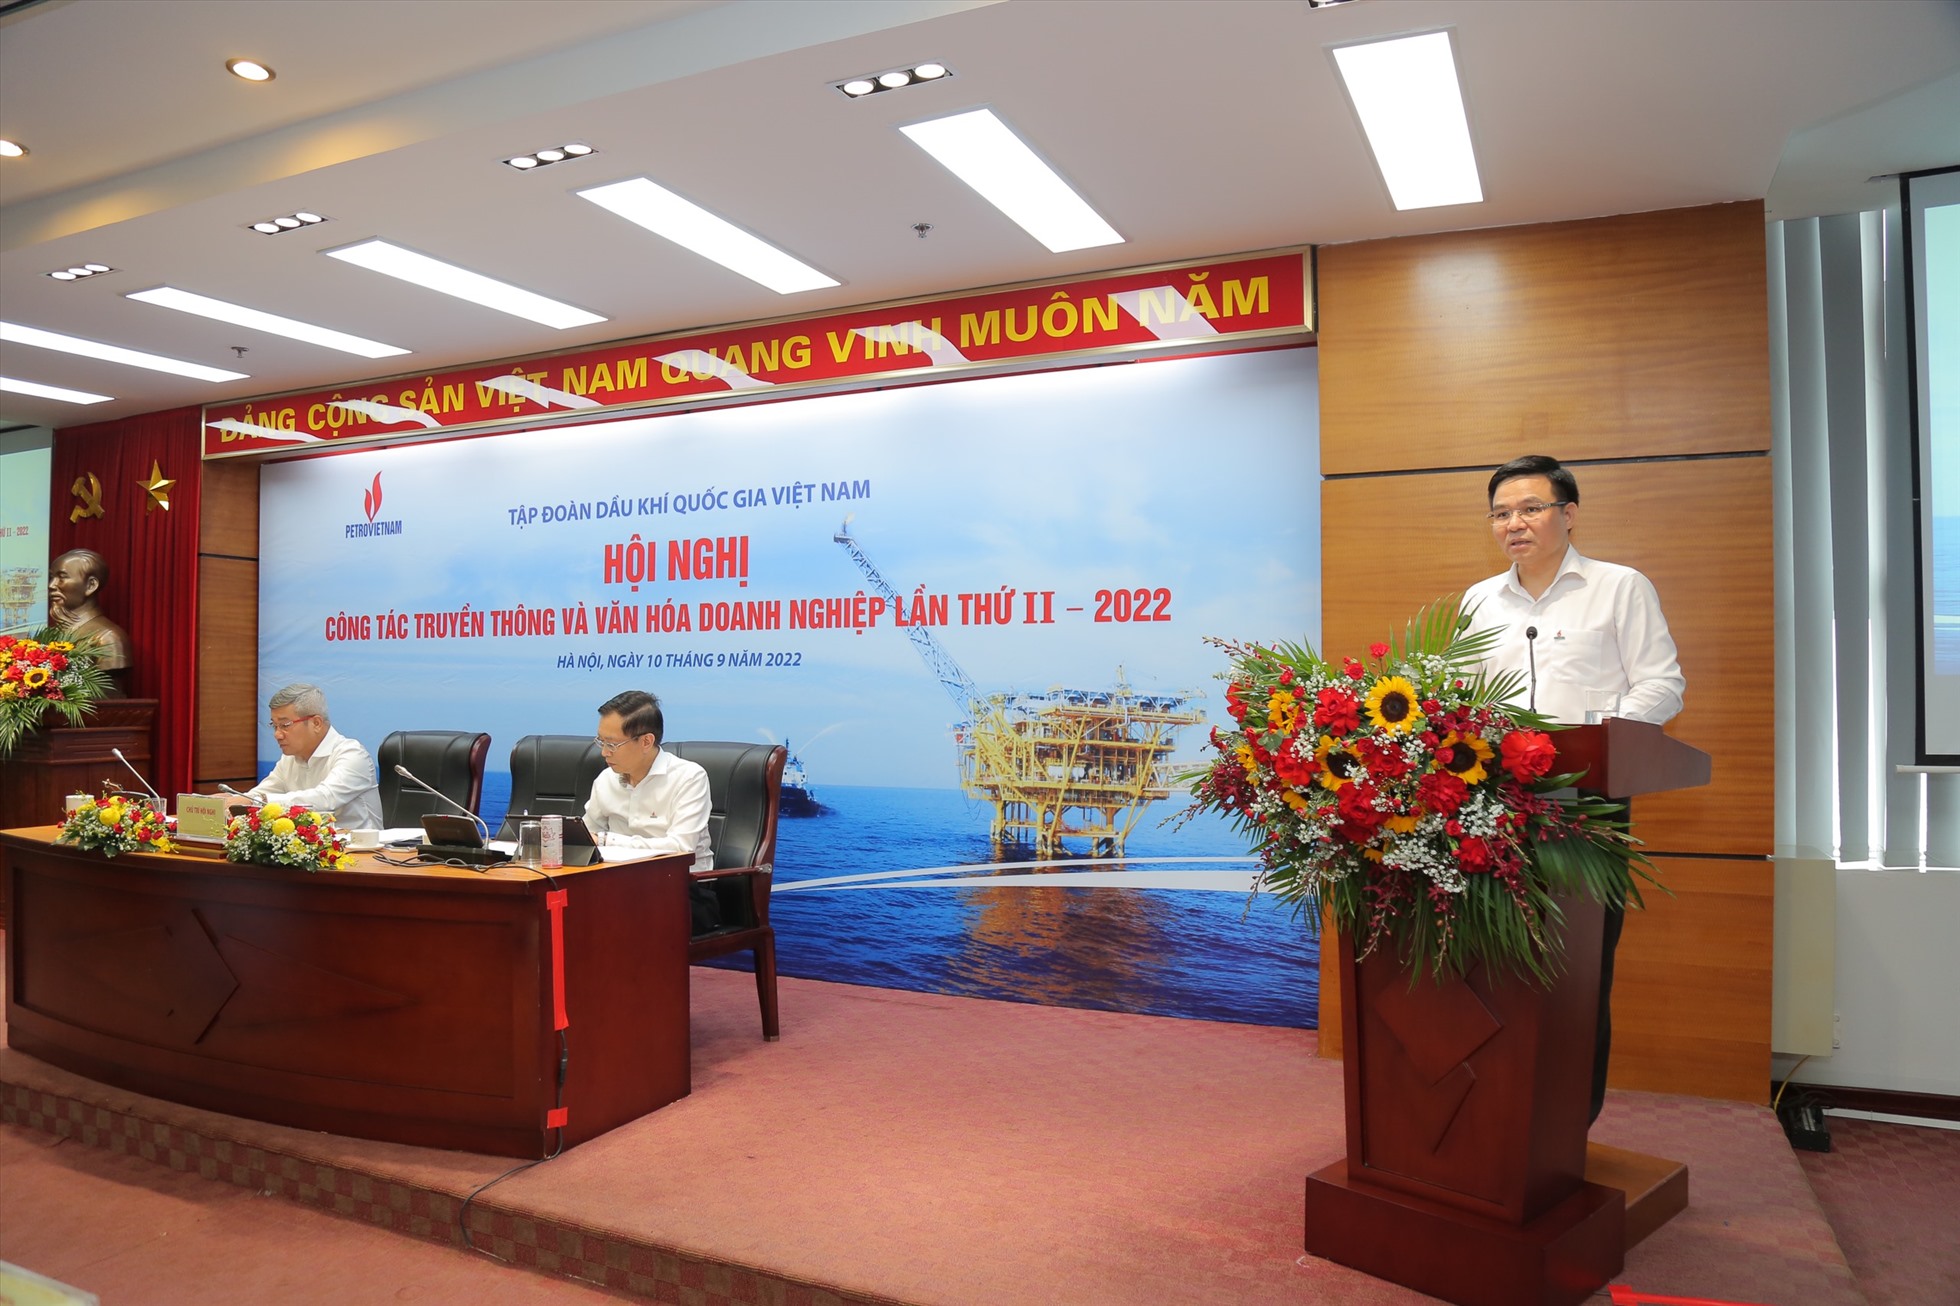 Tổng giám đốc Petrovietnam Lê Mạnh Hùng phát biểu kết luận tại Hội nghị công tác truyền thông và văn hóa doanh nghiệp lần thứ II – 2022.